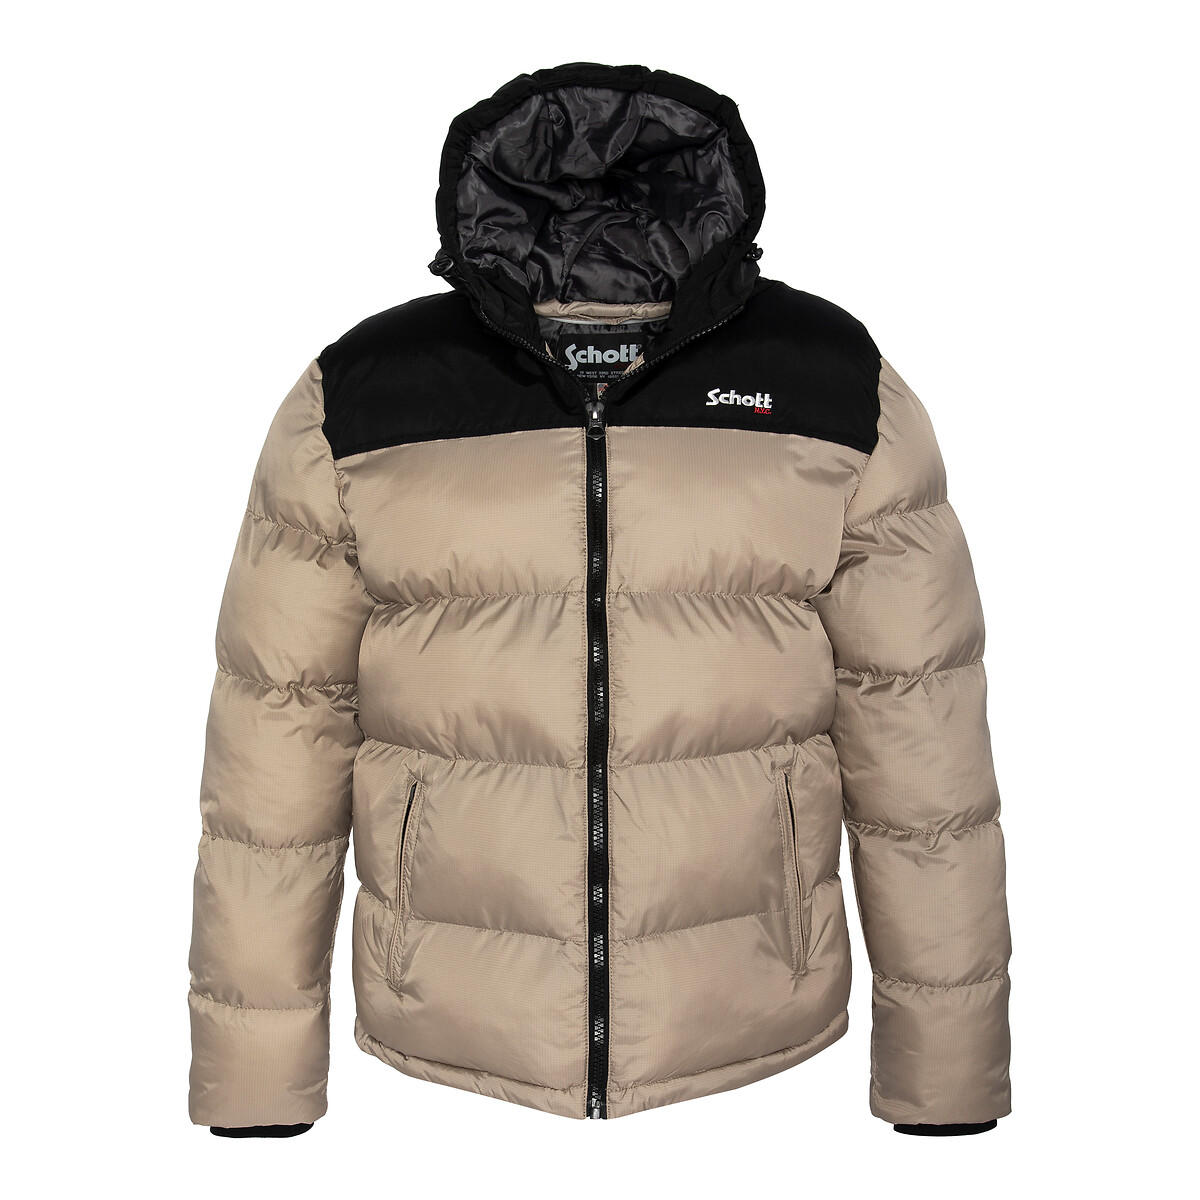 Куртка стеганая двухцветная с капюшоном Utah 2 XXL бежевый куртка стеганая с капюшоном двухцветная 12 лет 150 см черный